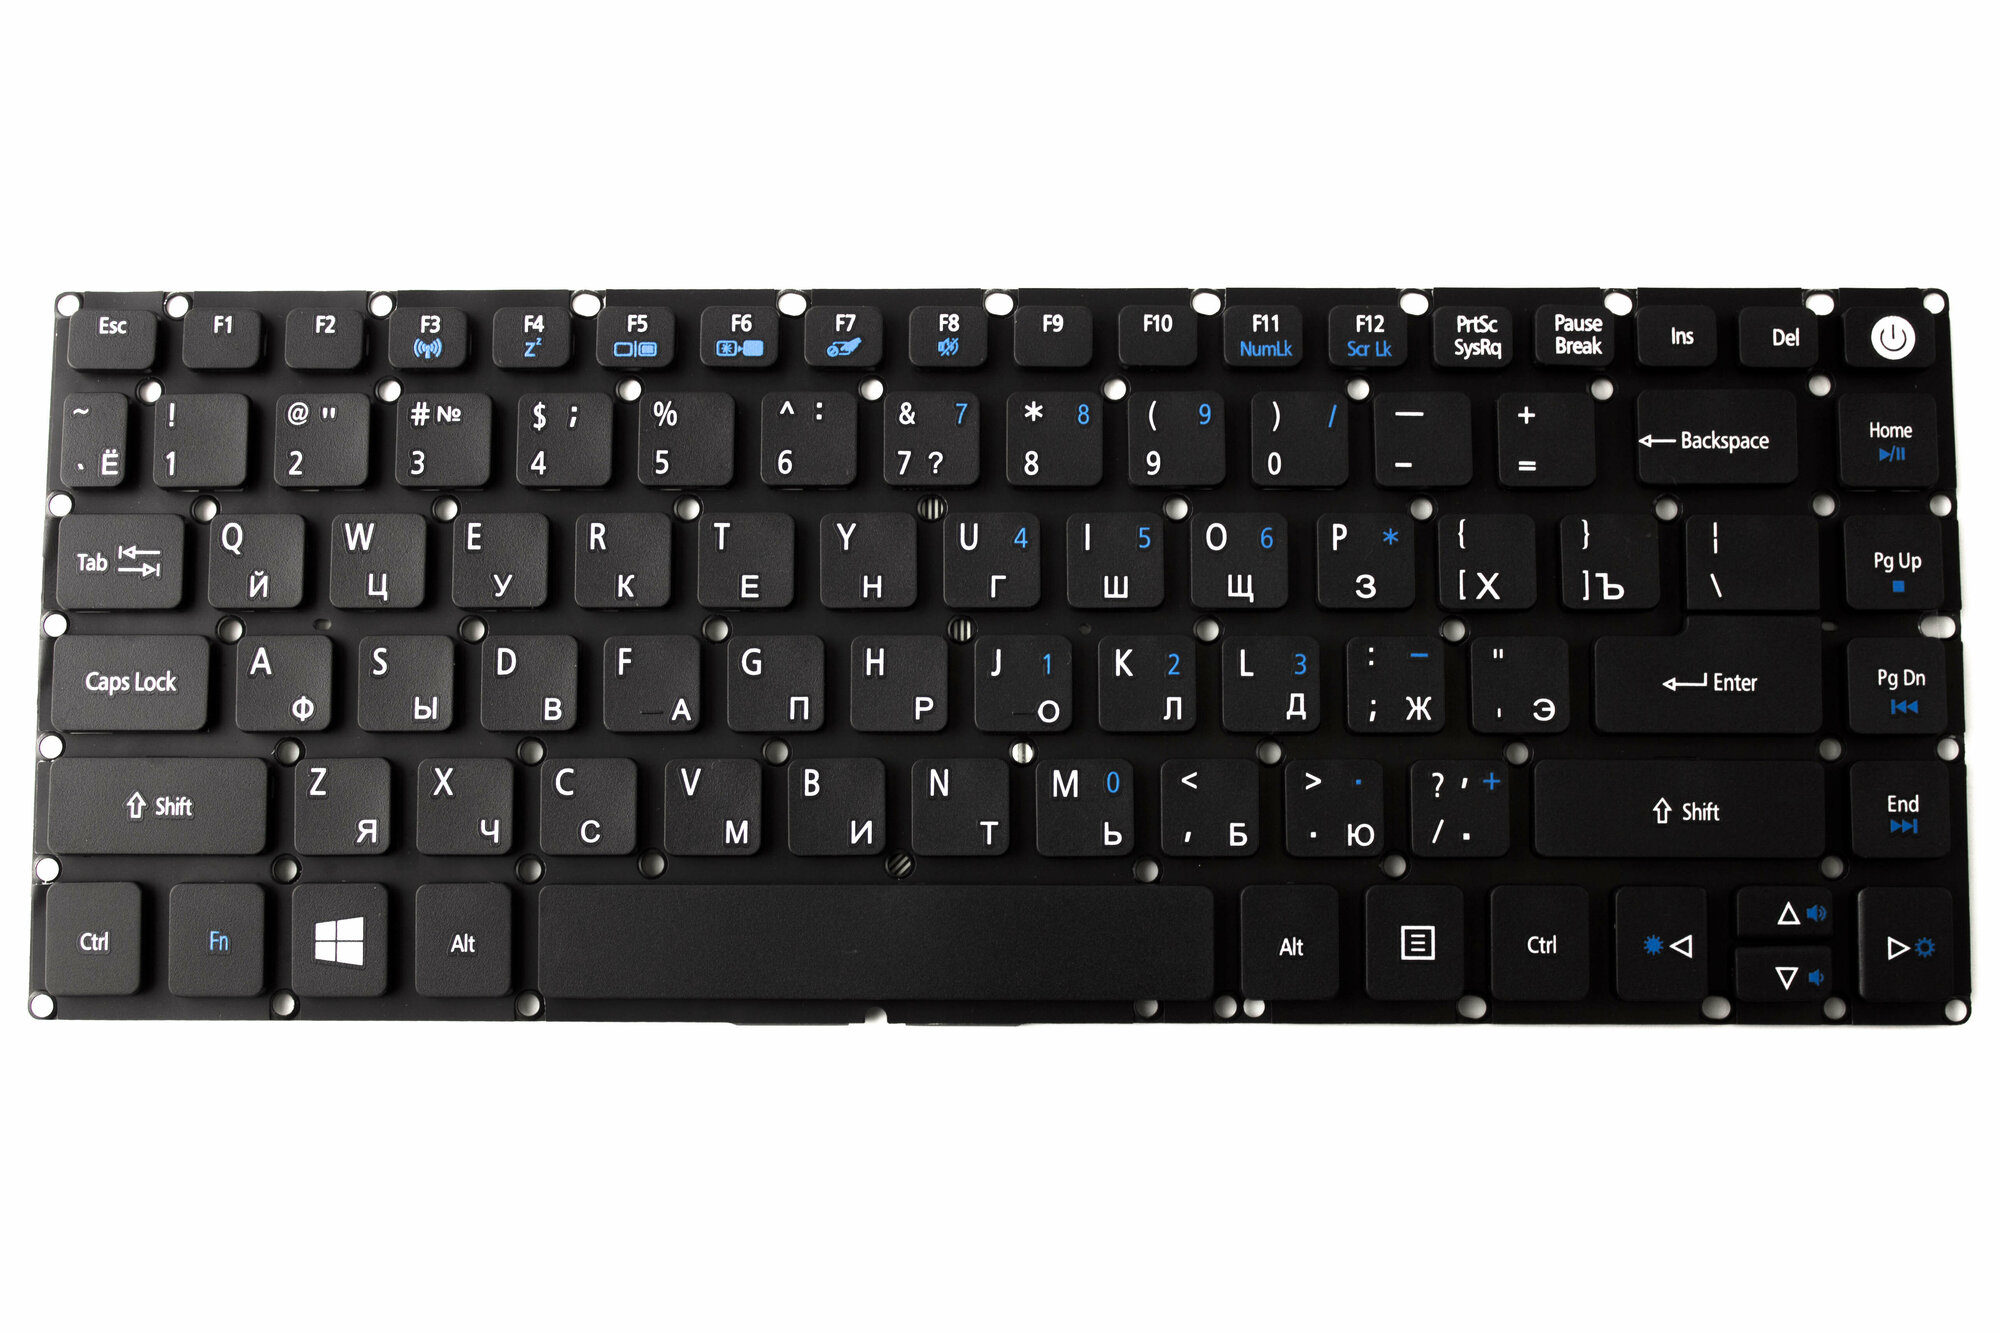 Клавиатура для ноутбука Acer ES1-432